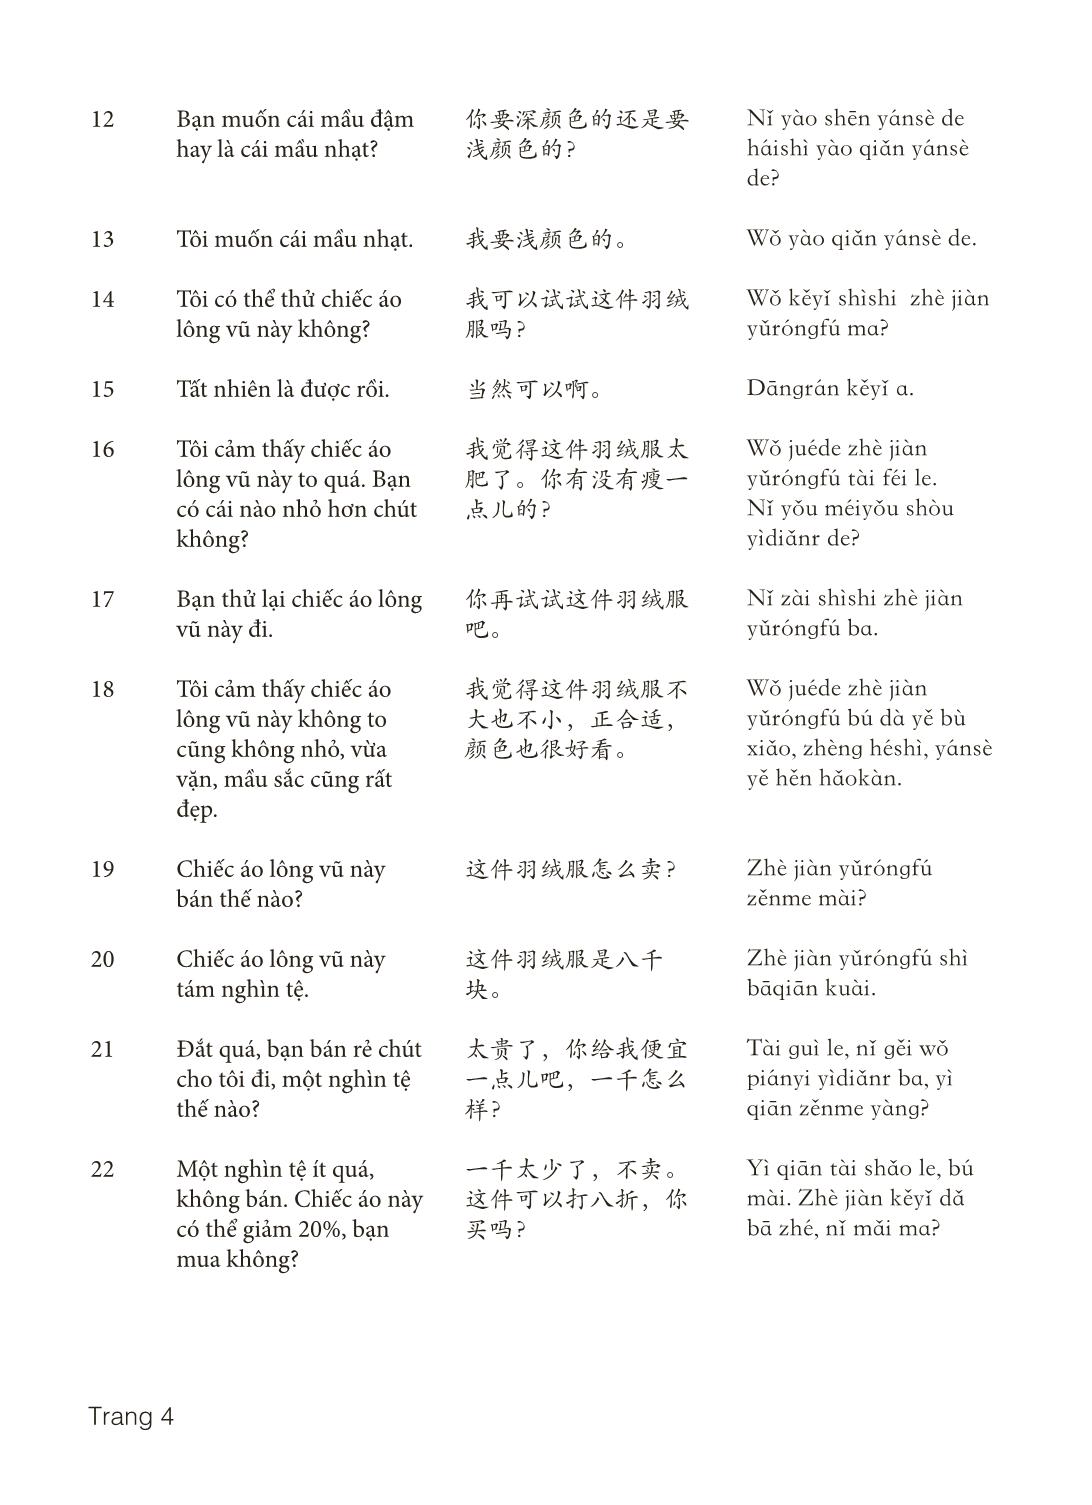 3000 Câu đàm thoại tiếng Hoa - Phần 5 trang 4